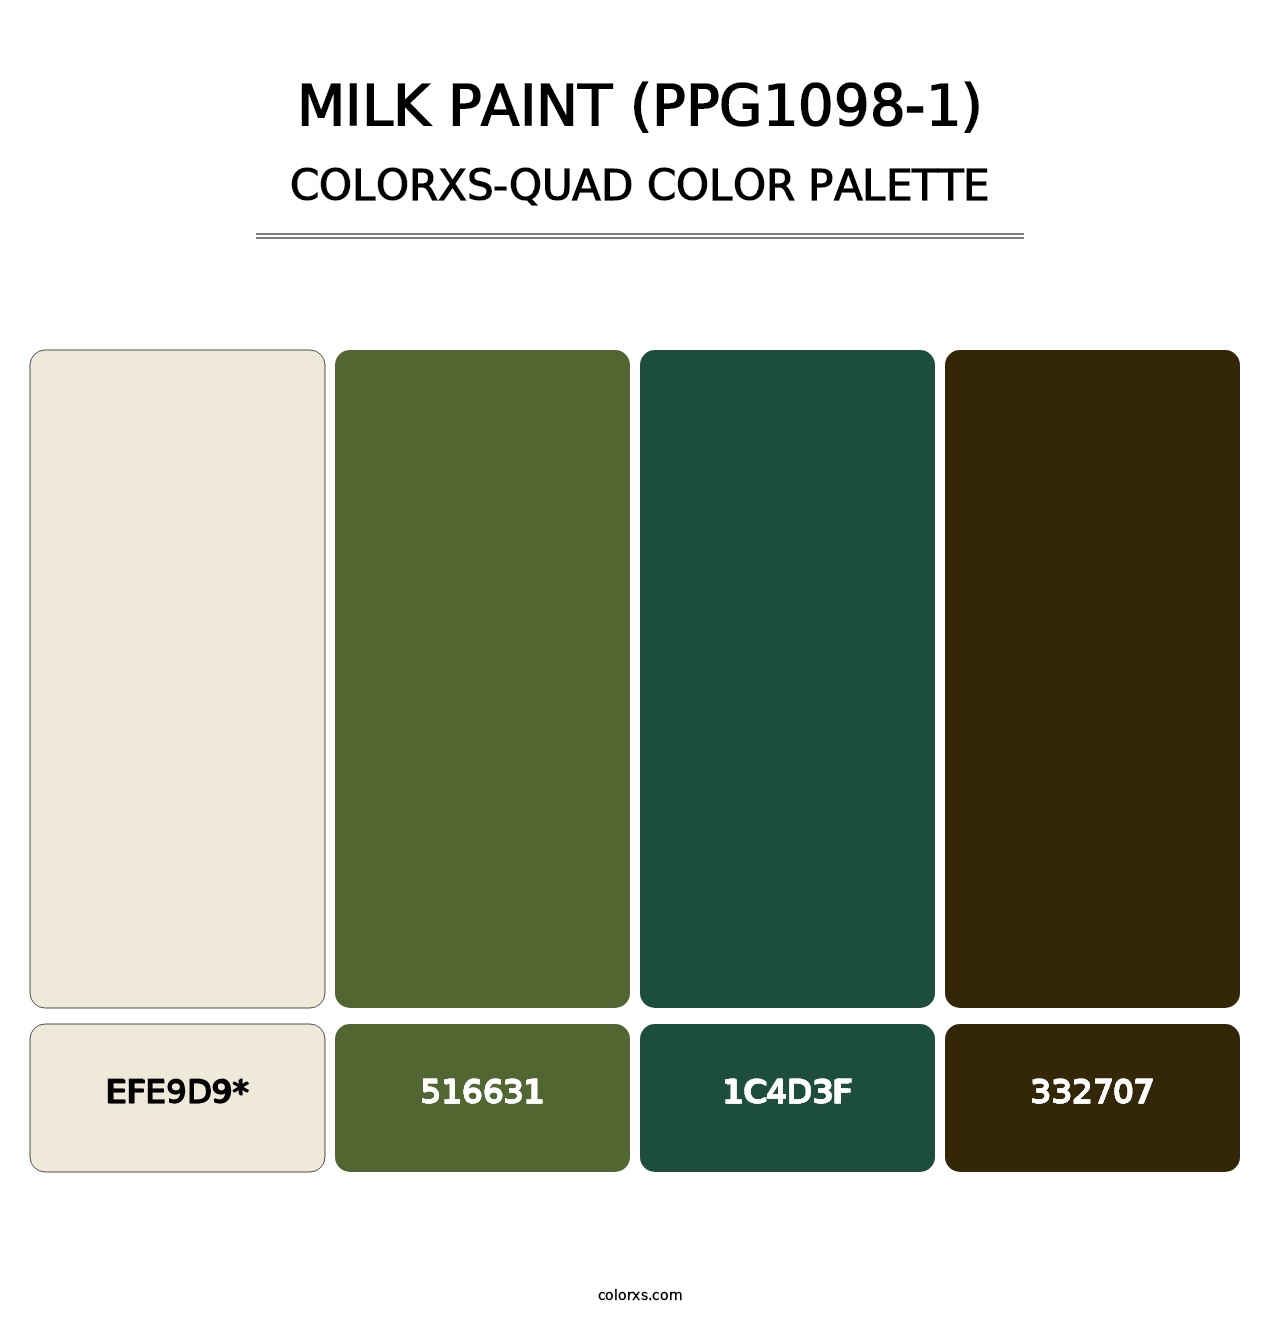 Milk Paint (PPG1098-1) - Colorxs Quad Palette